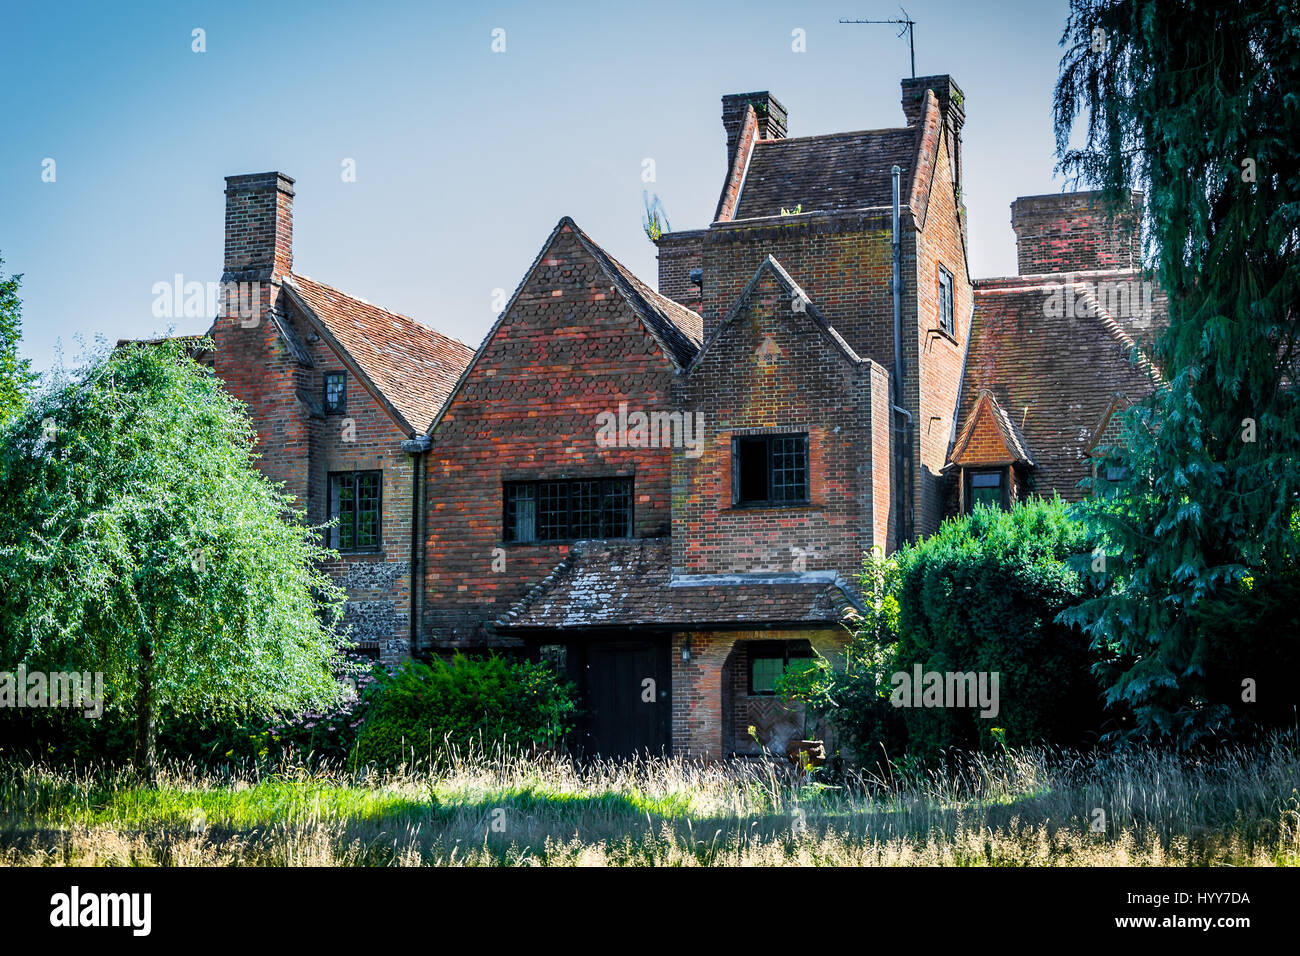 Reino Unido: HAUNTING imágenes revelan que las ruinas de la mansión de  Oxfordshire - supuestamente valen £12m y una vez propiedad de David Gilmour de  Pink Floyd. Las fantasmagóricas fotografías muestran la